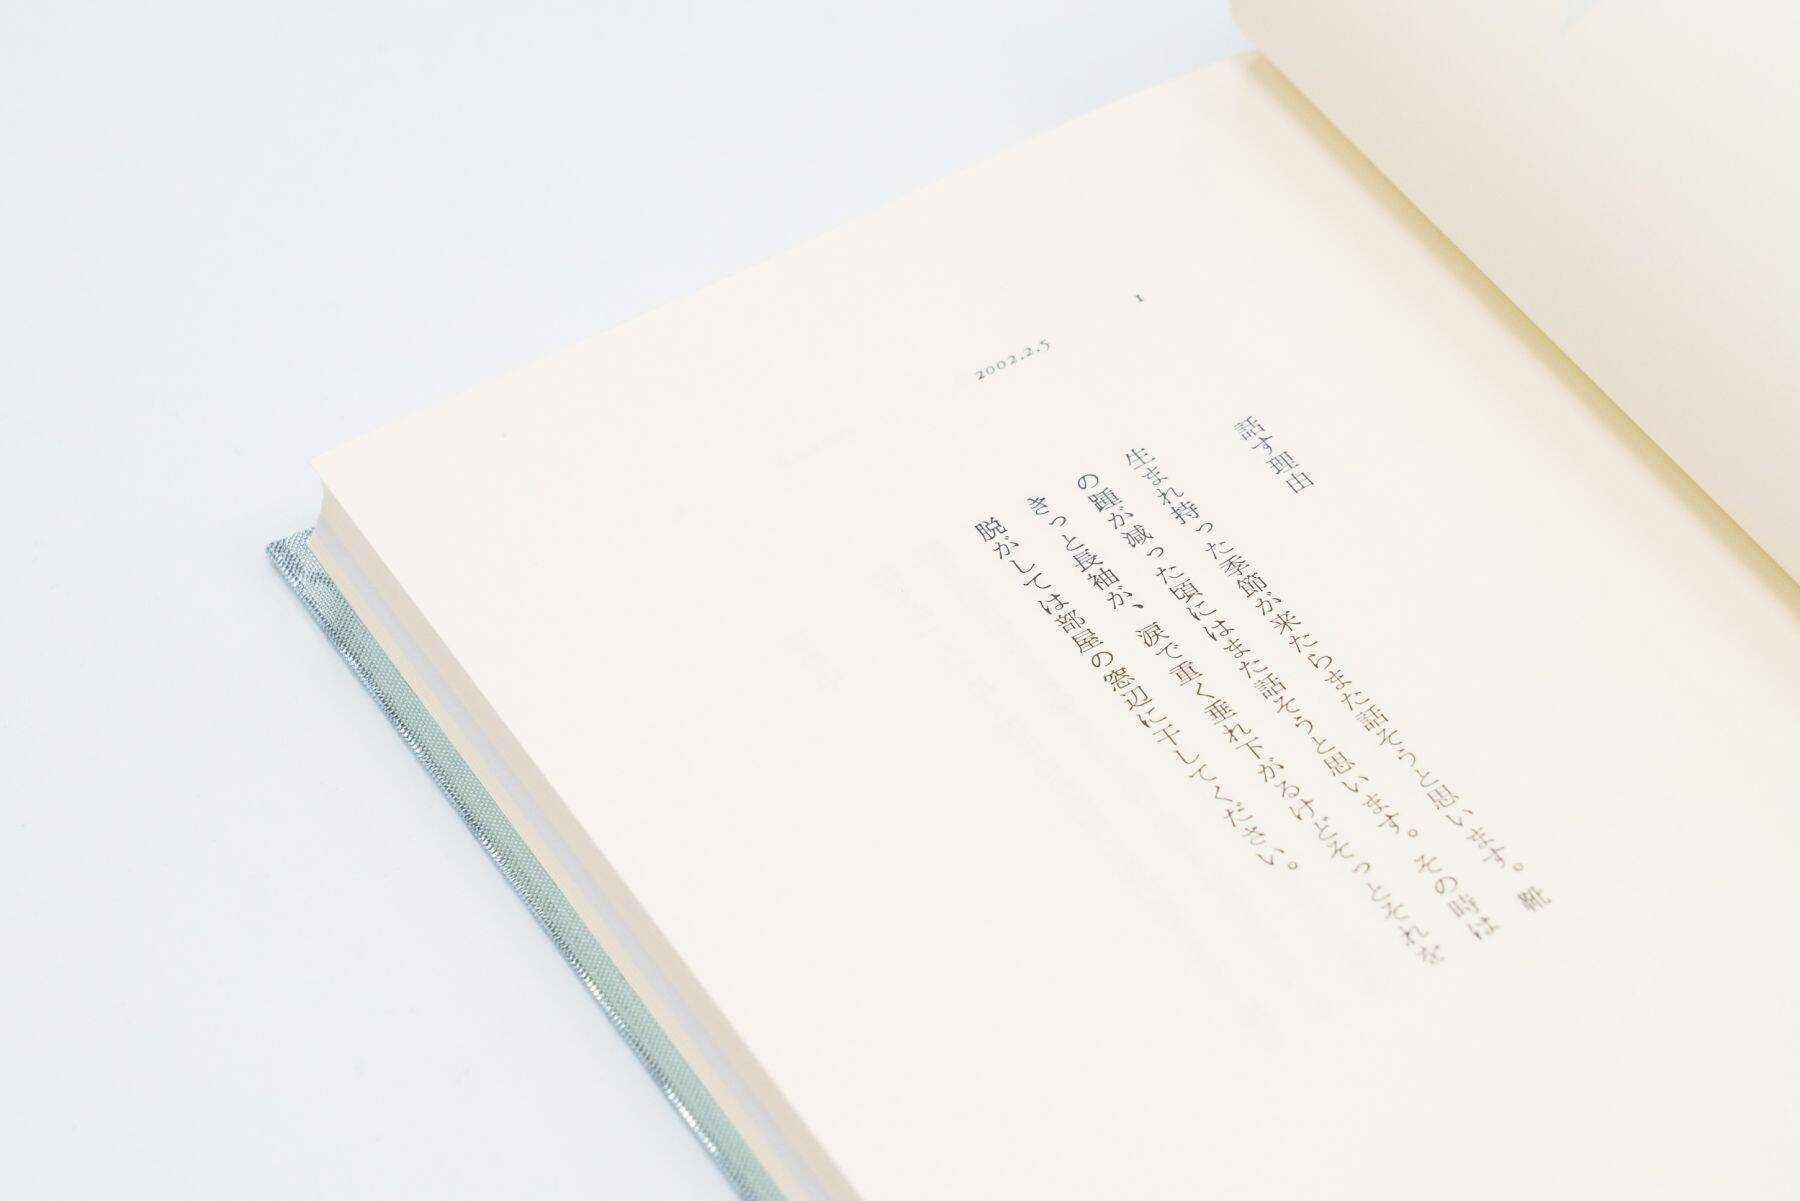 サカナクション山口一郎がデビュー前に綴った全250篇の「ことば」を収録。単著第2弾が刊行